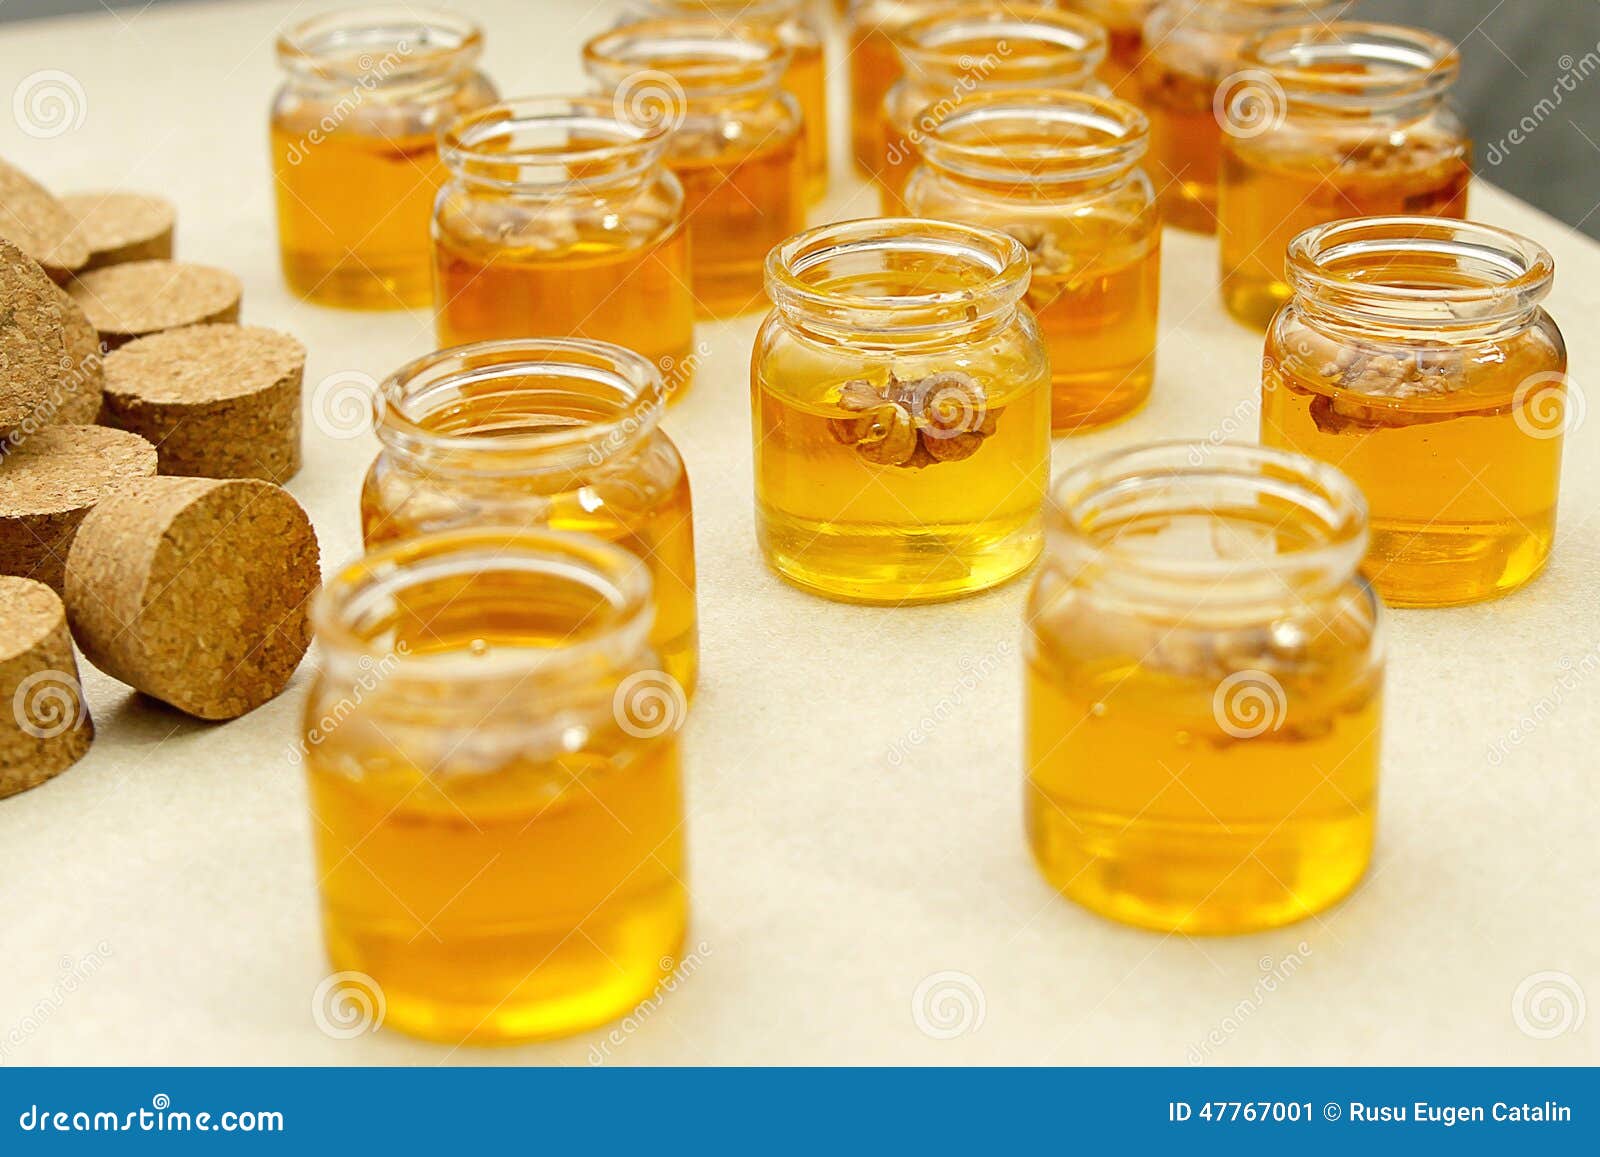 jars with honey